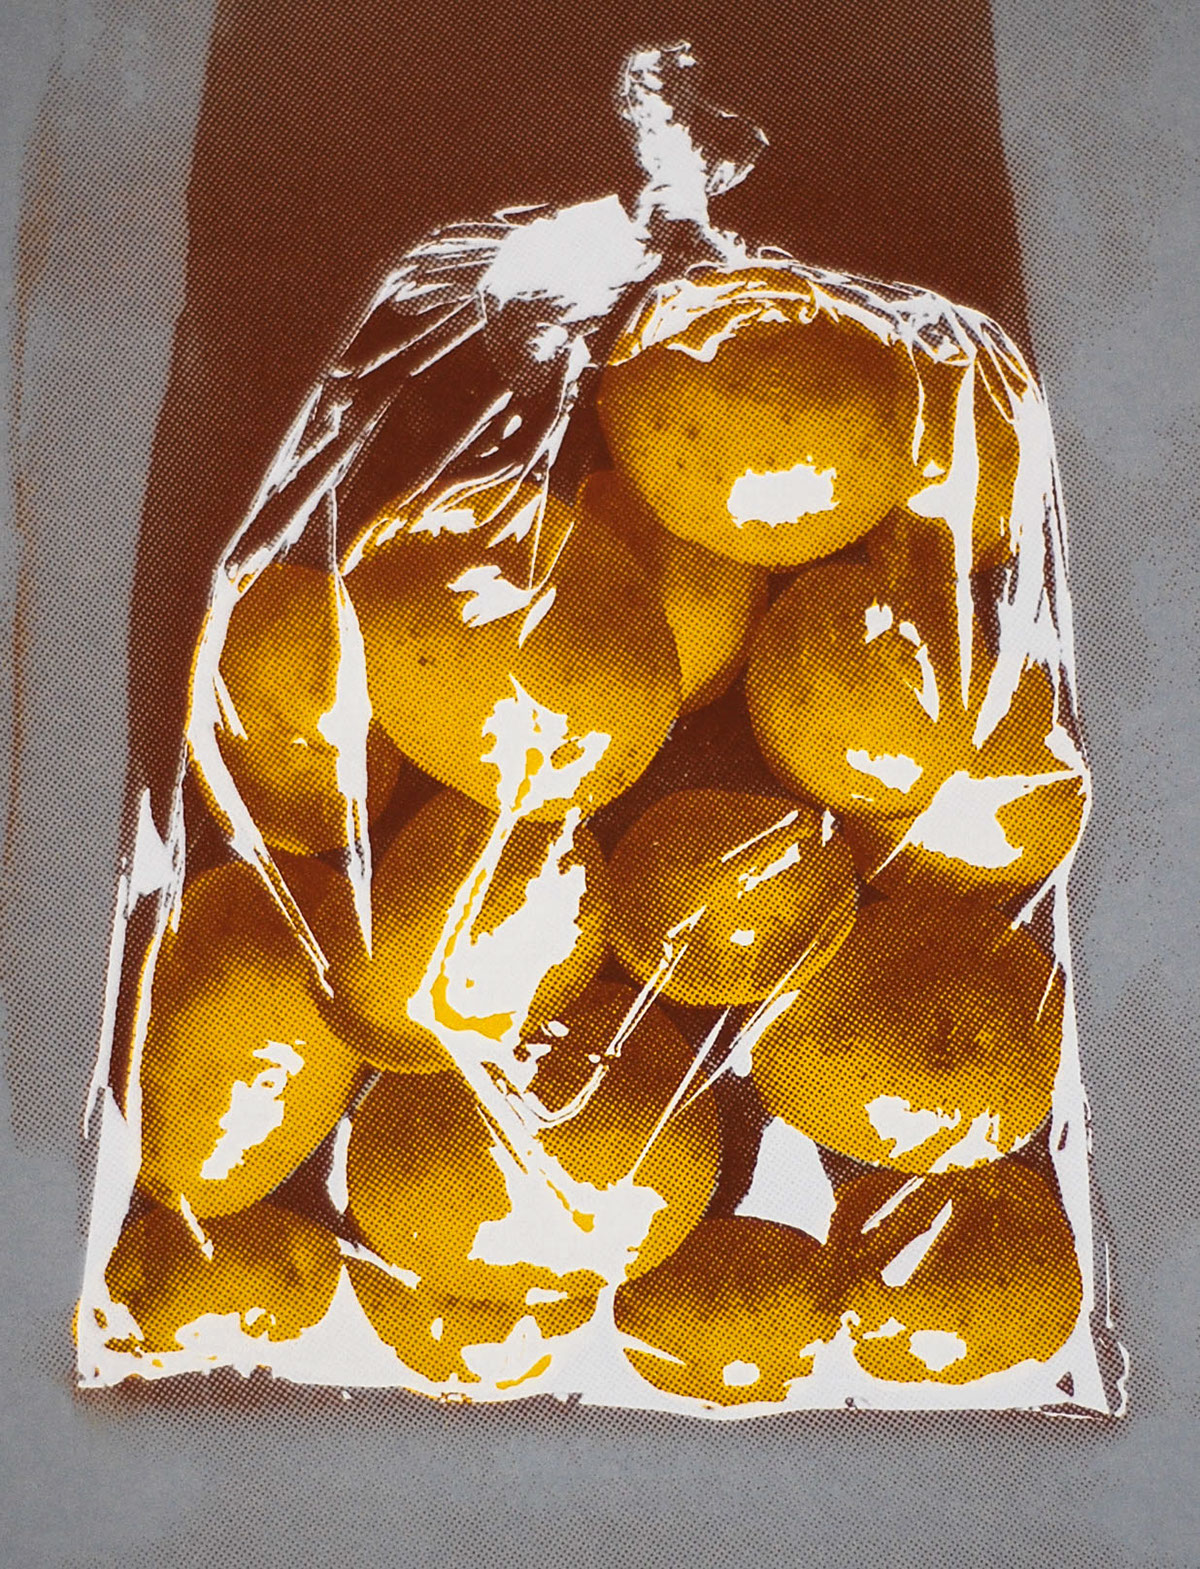 Serigraphy serigraph serigrafia silk-screen SILK potatoes reticule bag of potatos saco de batatas homem ou saco de batatas